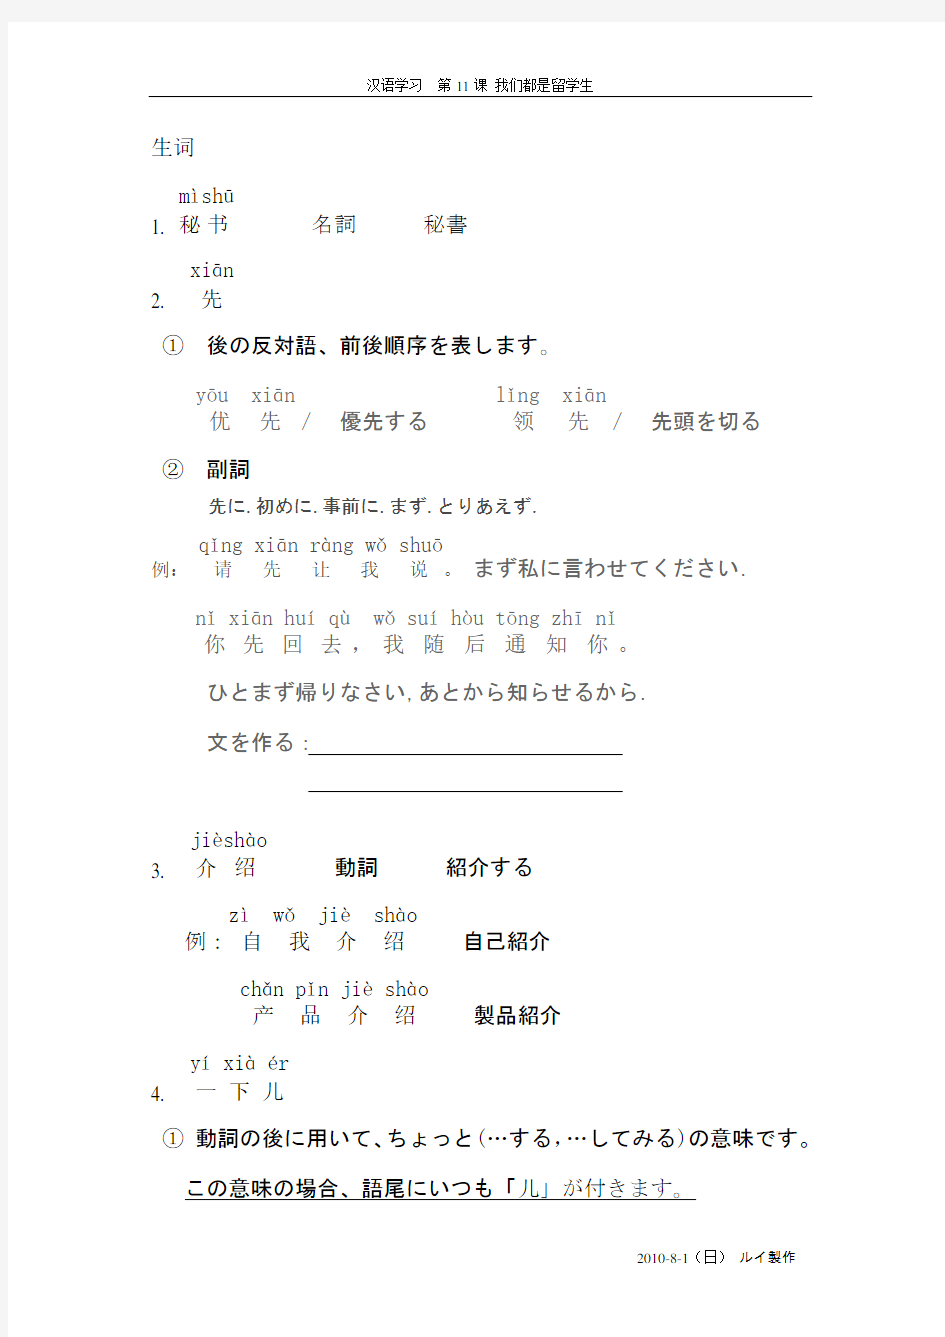 20100727 对外汉语教材(教日本人学习汉语) 第11课 单词